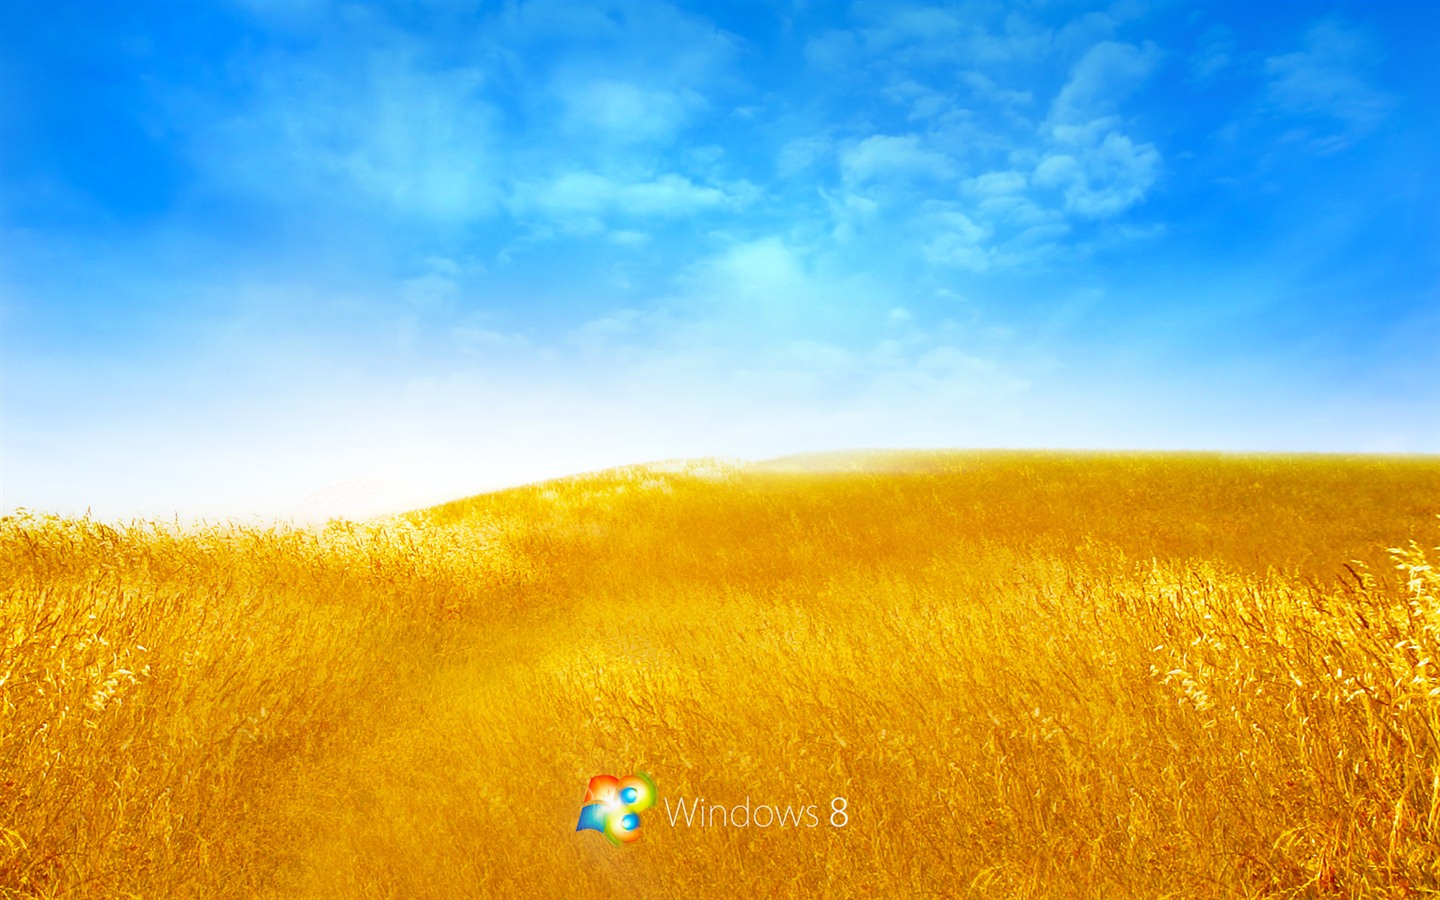 Fond d'écran Windows 8 Theme (2) #16 - 1440x900